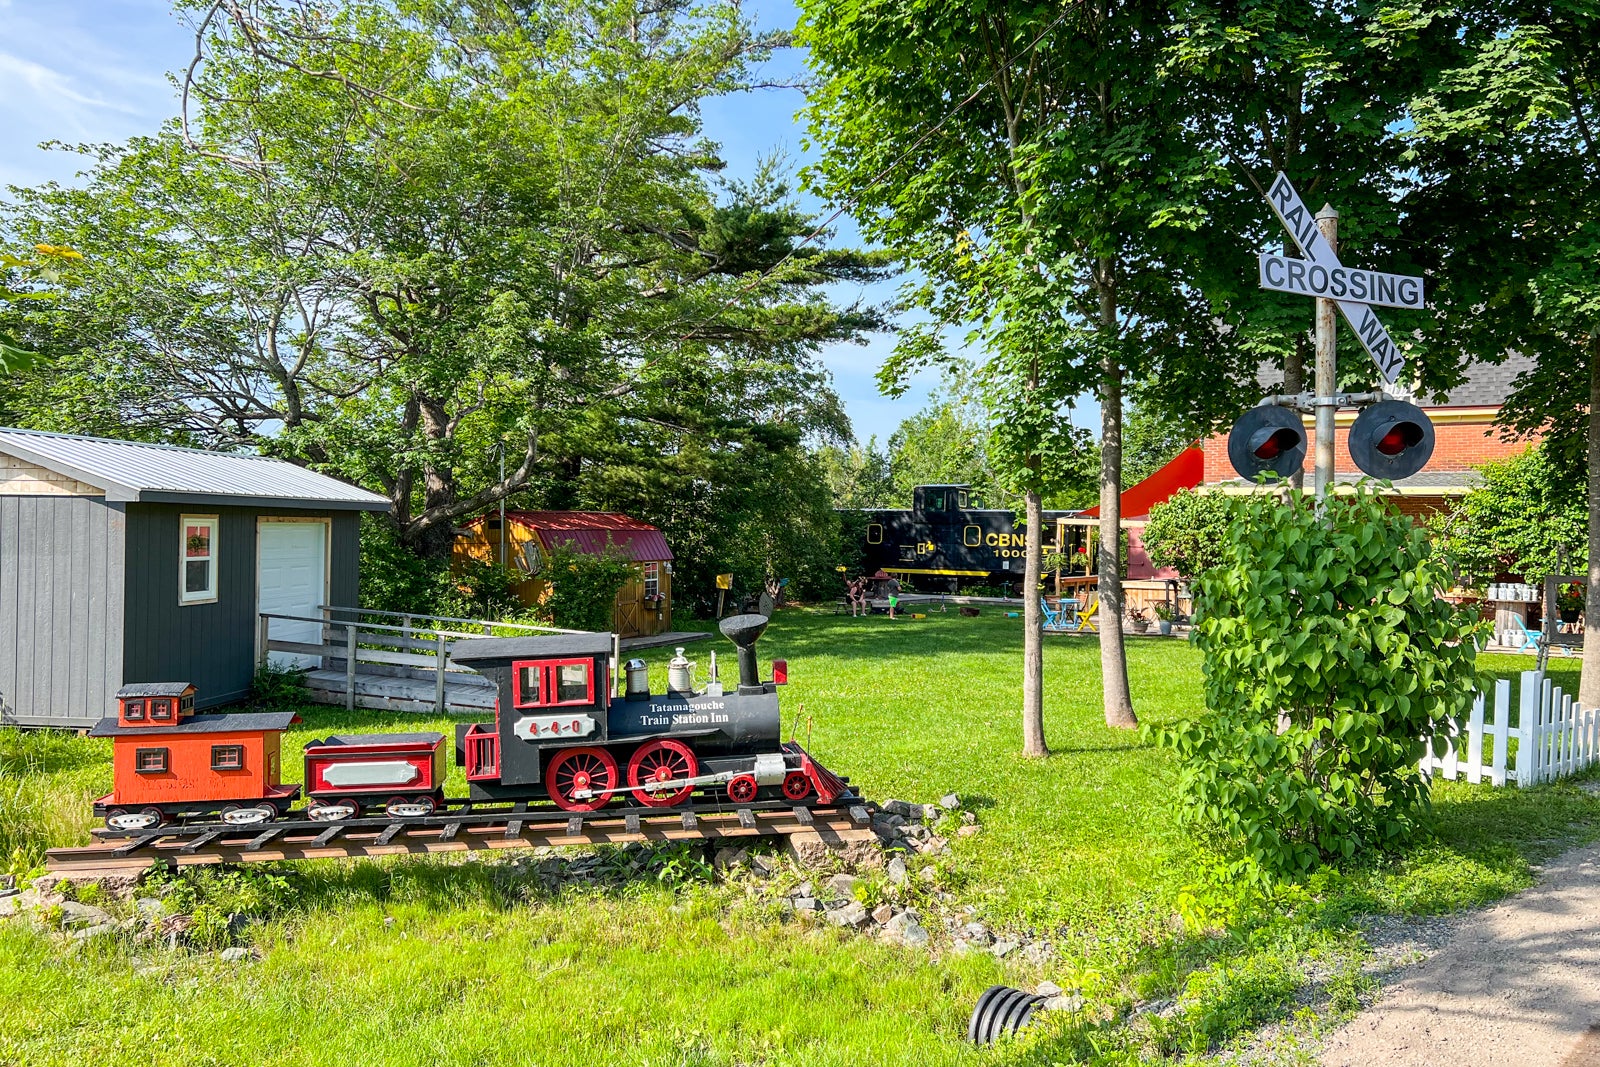 The model train at the Train Station Inn in Tatamagouche, Nova Scotia